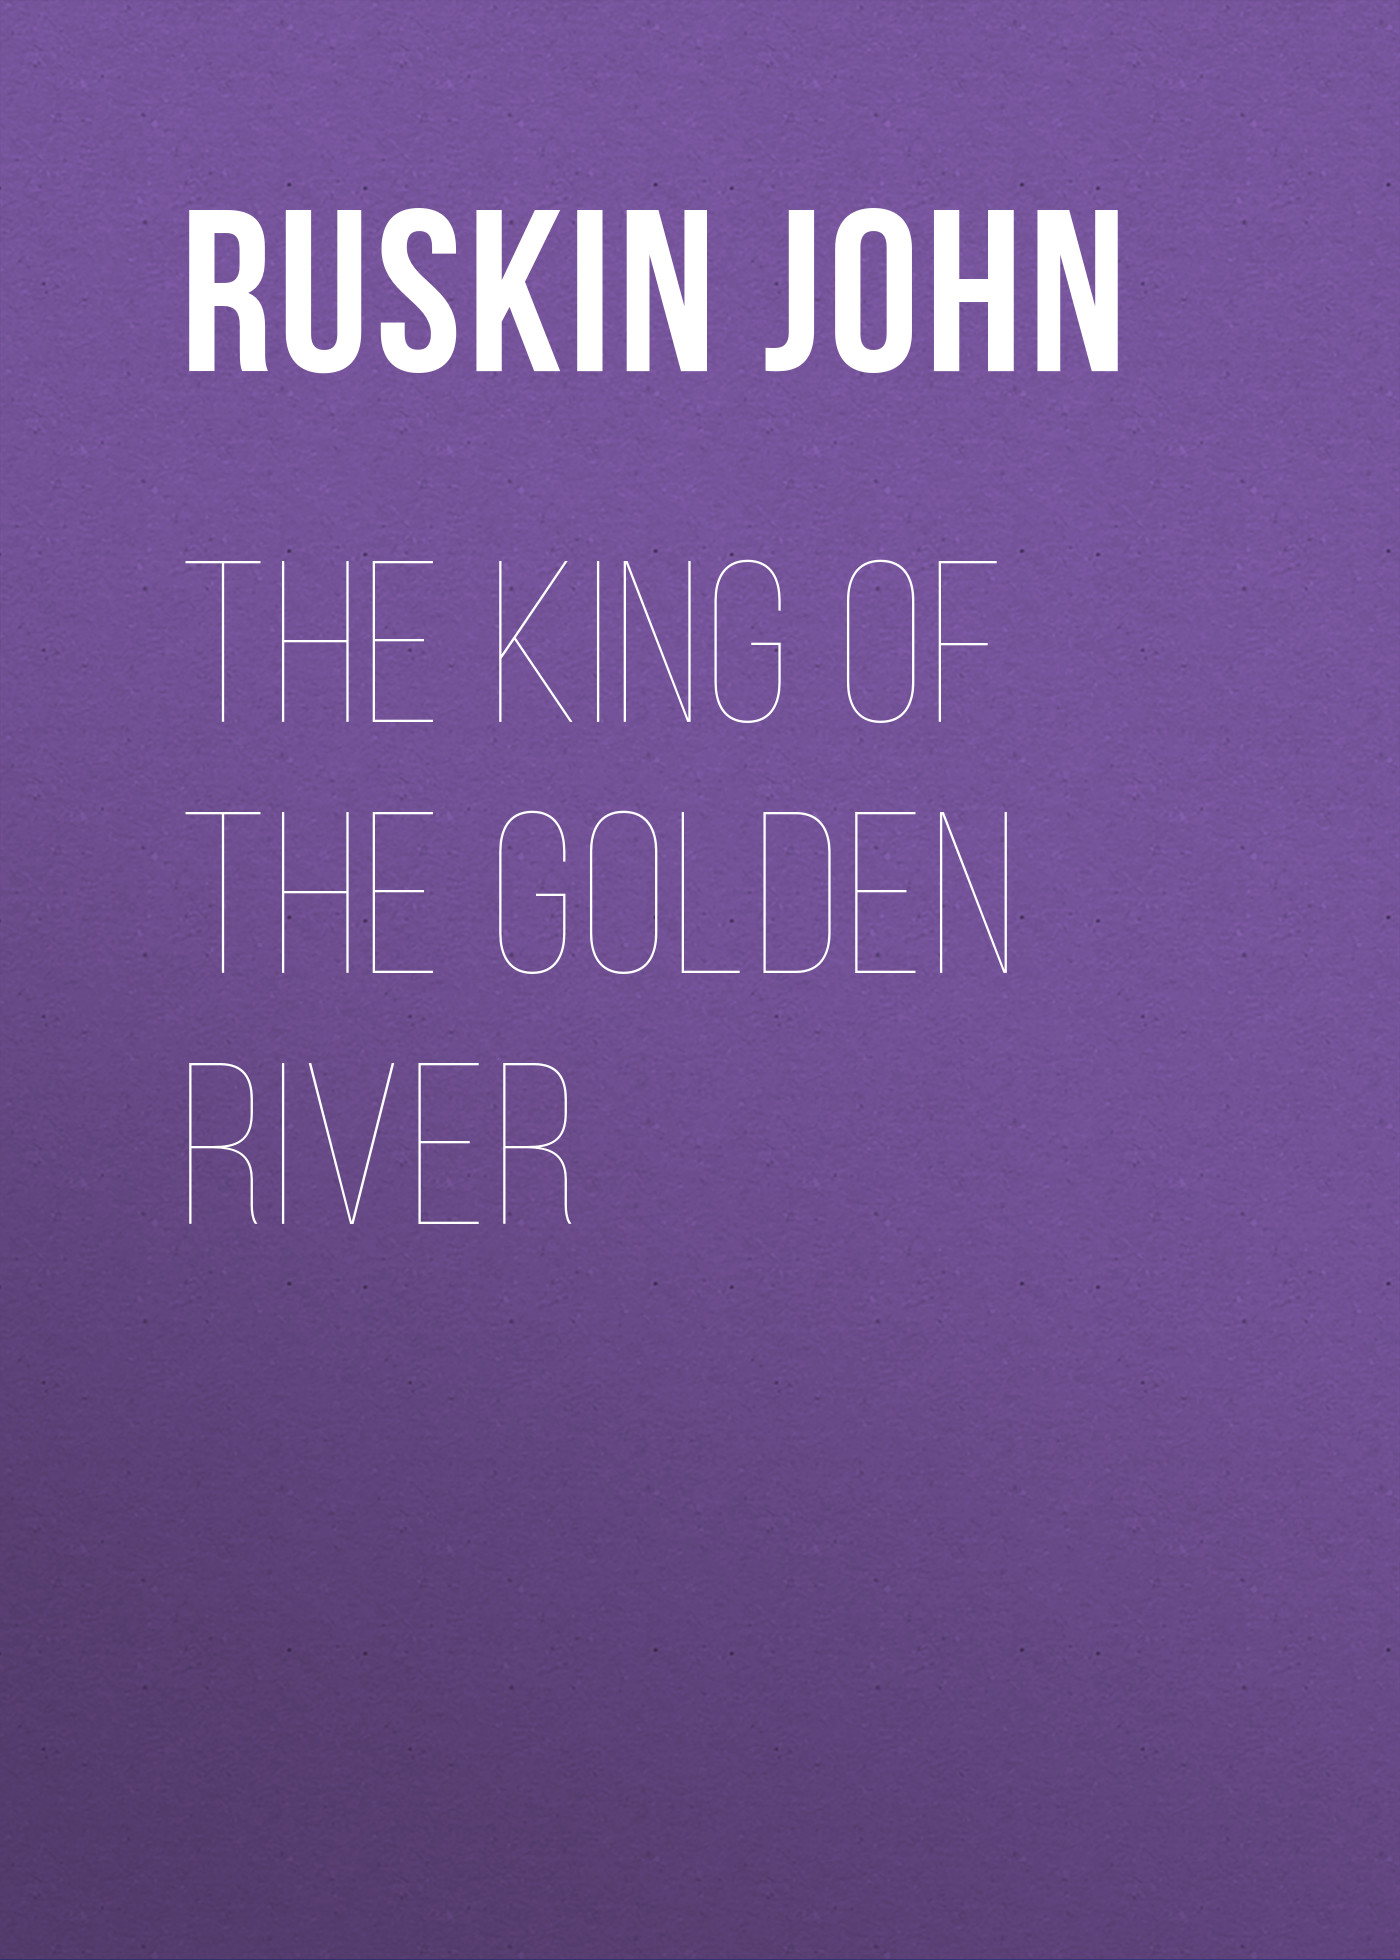 Книга The King of the Golden River из серии , созданная John Ruskin, может относится к жанру Сказки, Литература 19 века, Зарубежная старинная литература, Зарубежная классика. Стоимость электронной книги The King of the Golden River с идентификатором 34839022 составляет 0 руб.